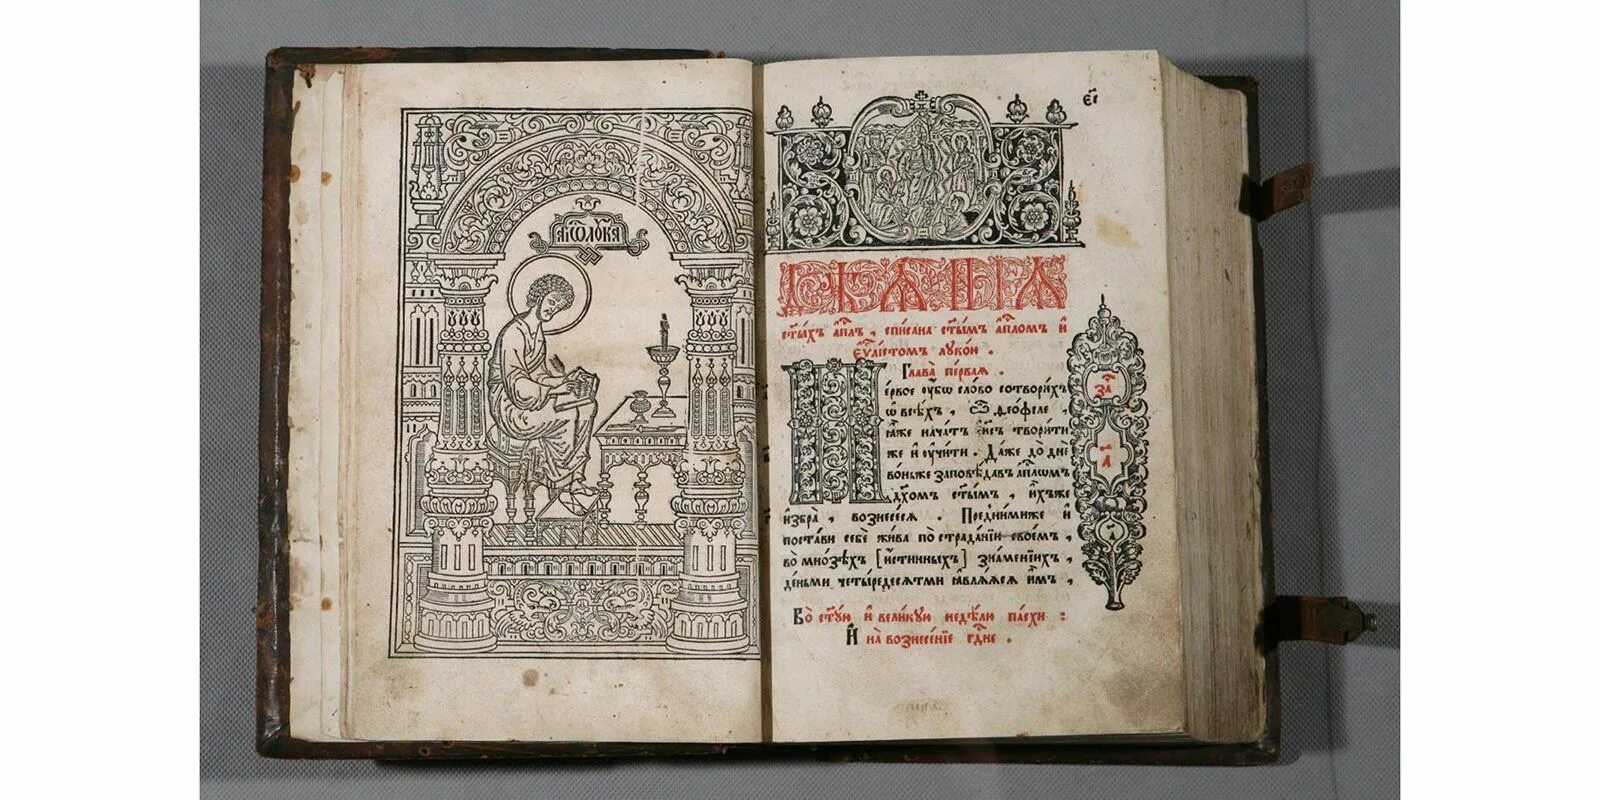 Апостол Ивана фёдорова. Апостол 1564. Издание первой датированной печатной книги